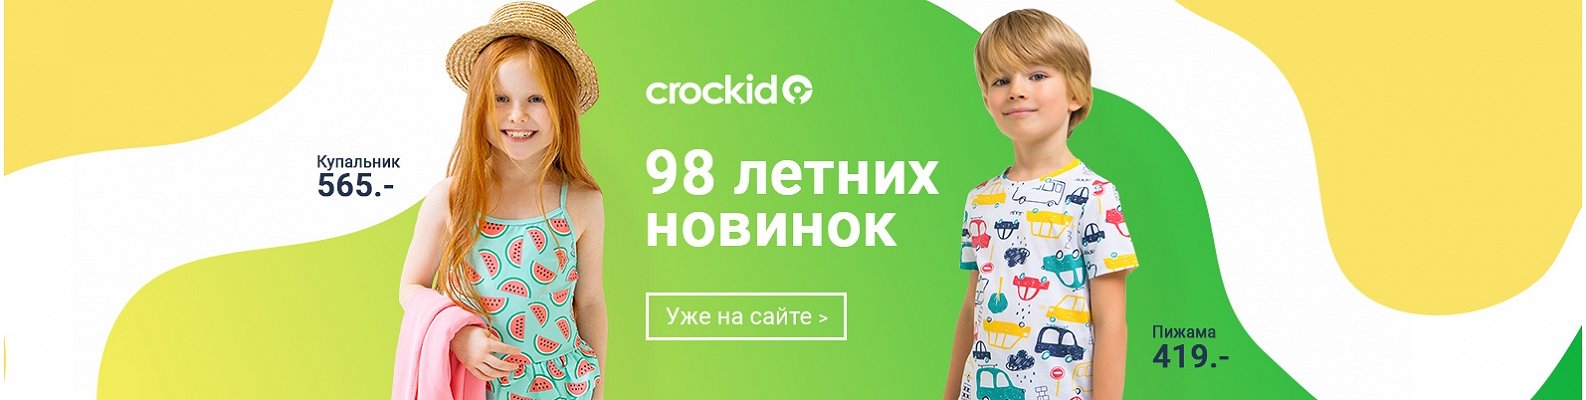 Optrf ru оптовый интернет магазин одежды. HAPPYWEAR мужчинам.